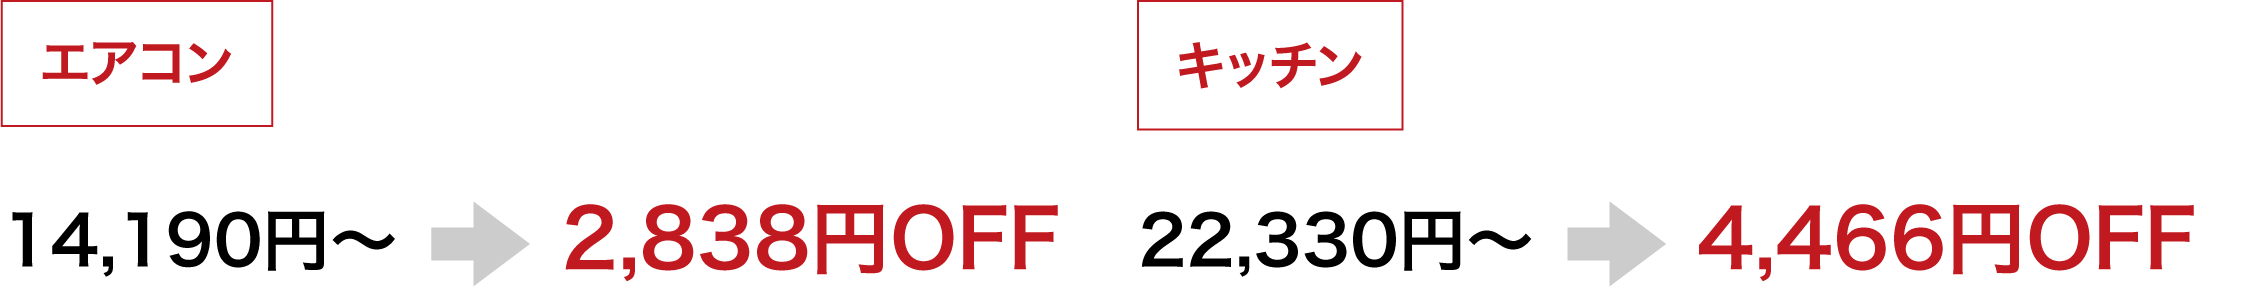 エアコン 14,190円～ → 2,838円OFF キッチン 22,330円～ → 4,466円OFF